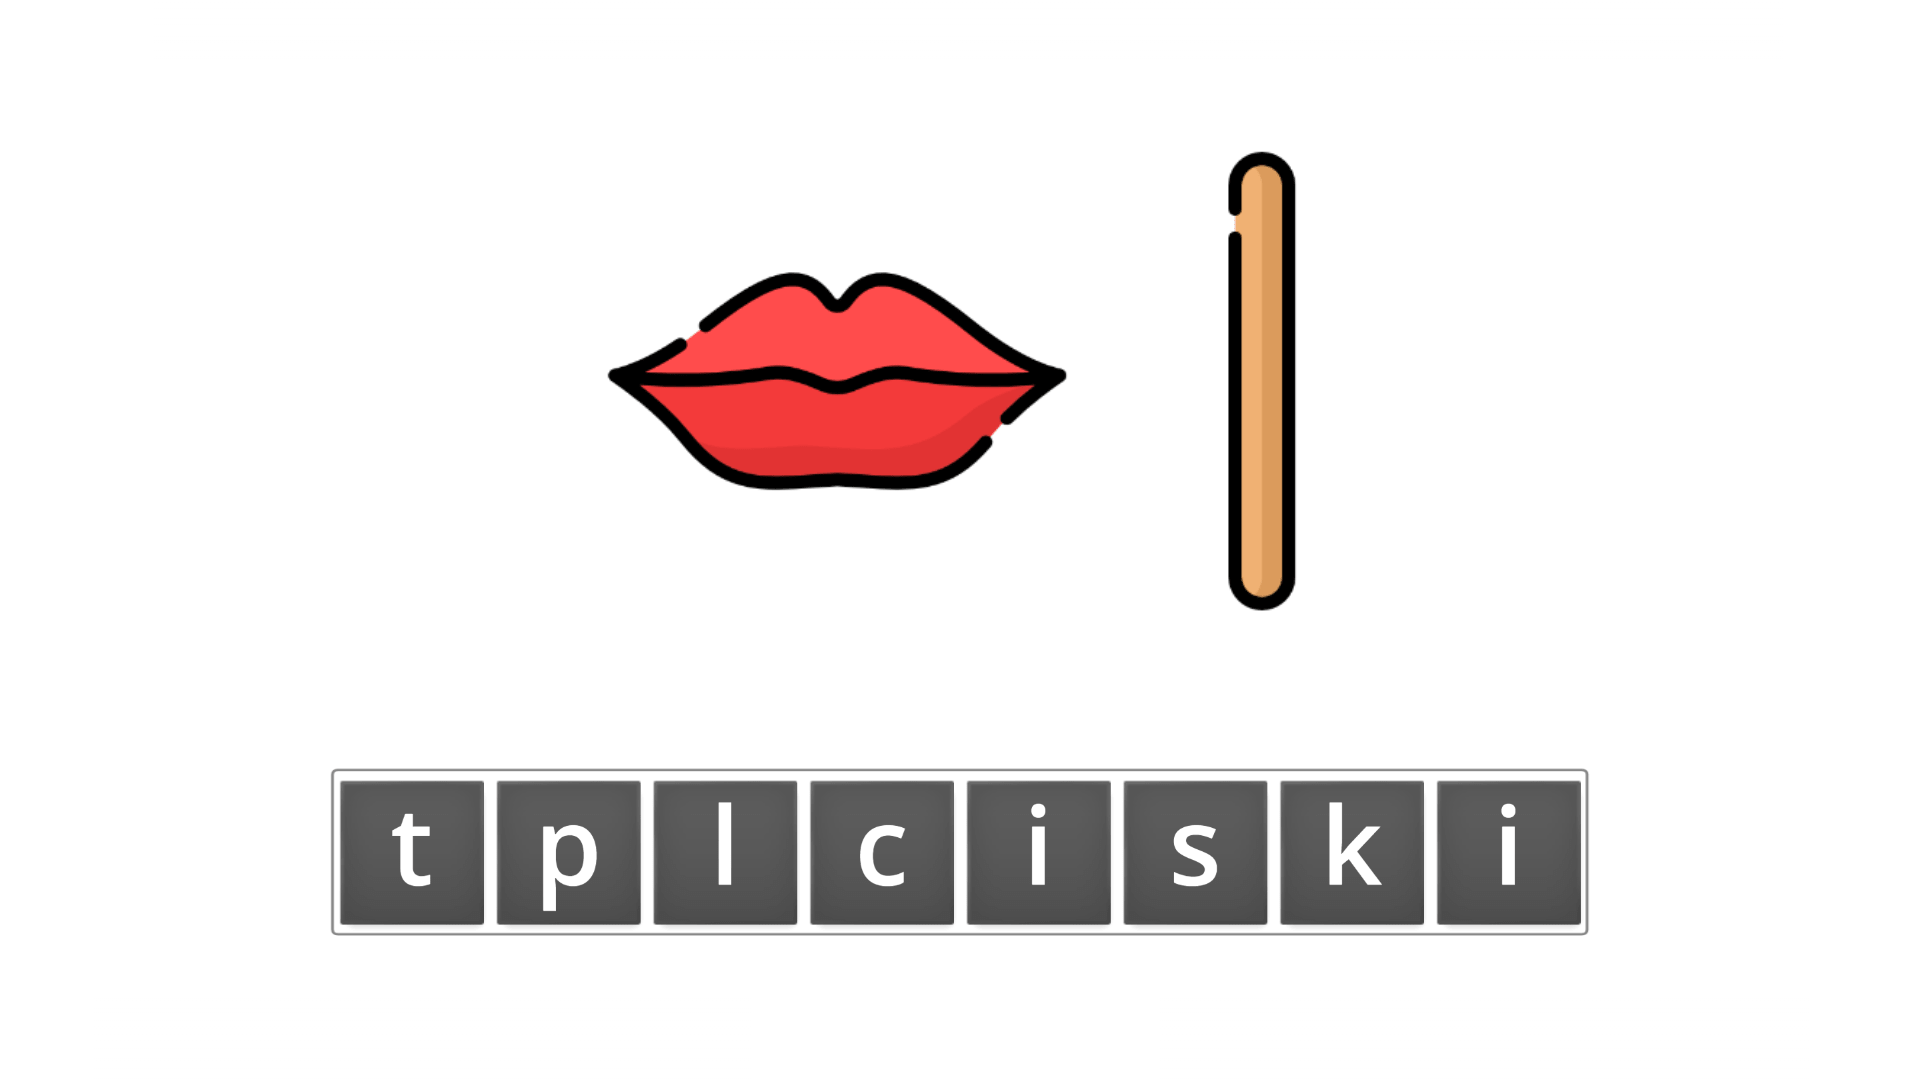 esl resources - flashcards - compound nouns  - unscramble - lipstick